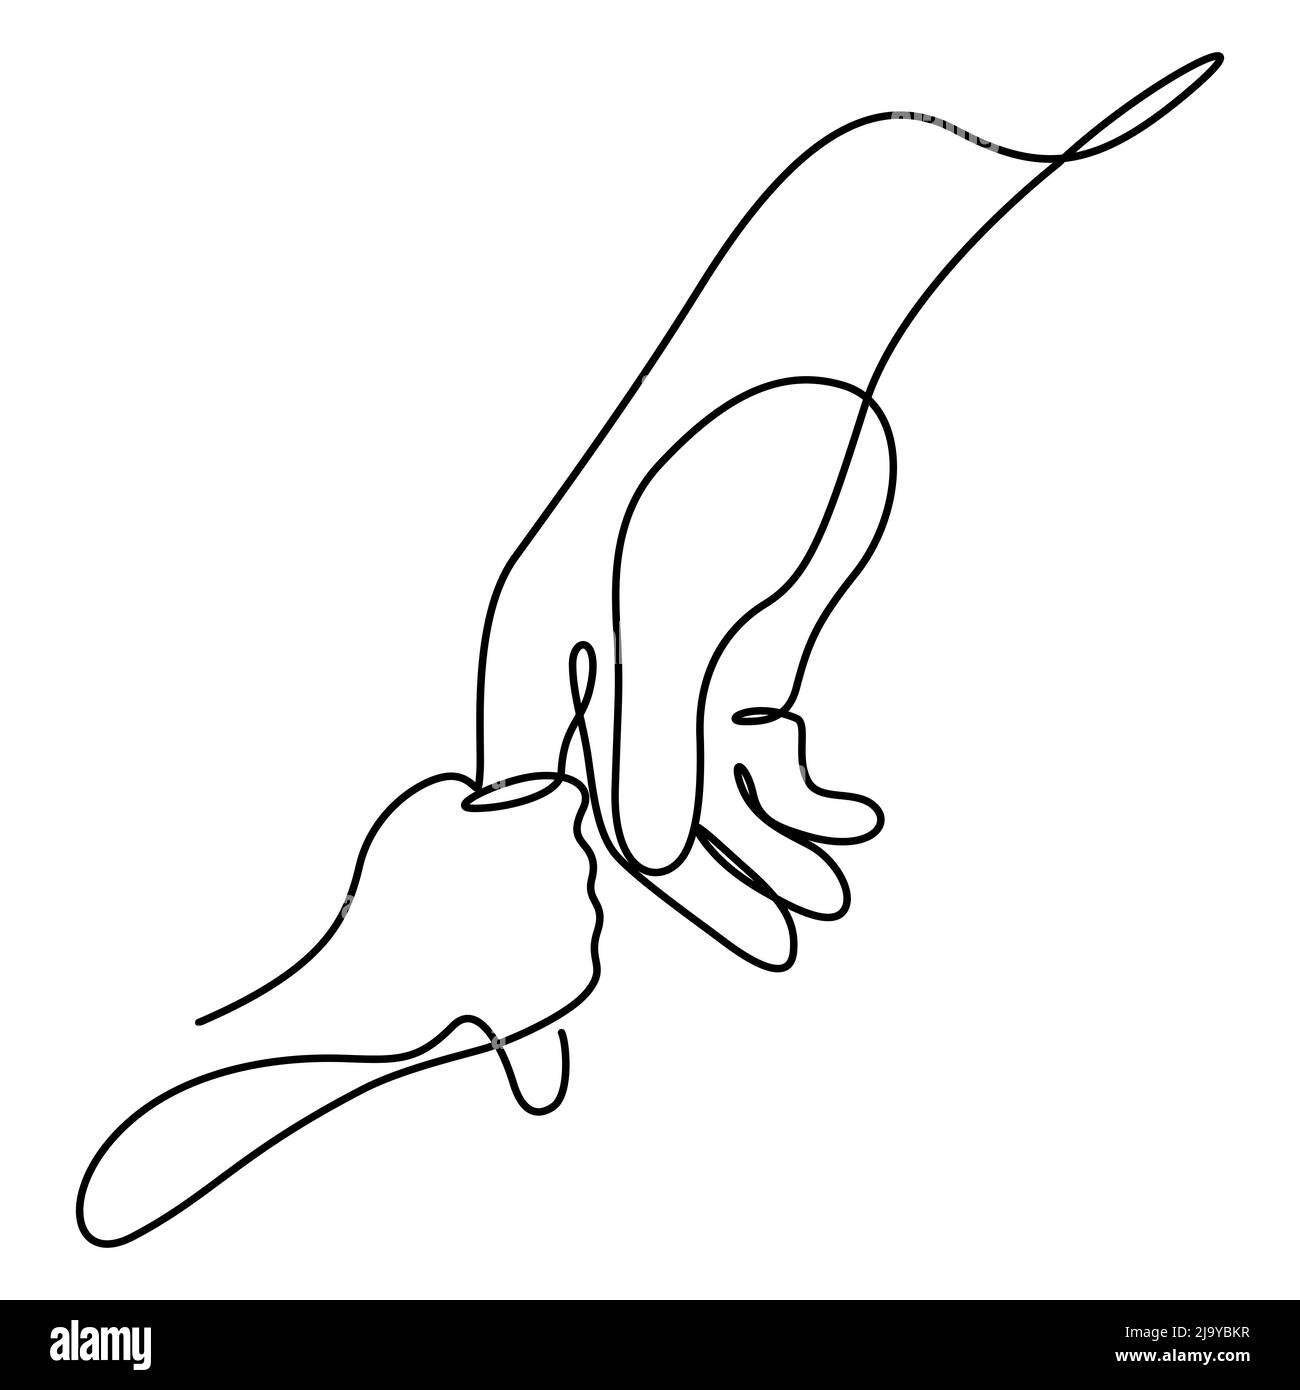 Vater und Kind Hände kontinuierliche Linie Illustration. Eine Linie Zeichnung von Erwachsenen und jungen Handhand mit Liebe Vektor halten. Stock Vektor